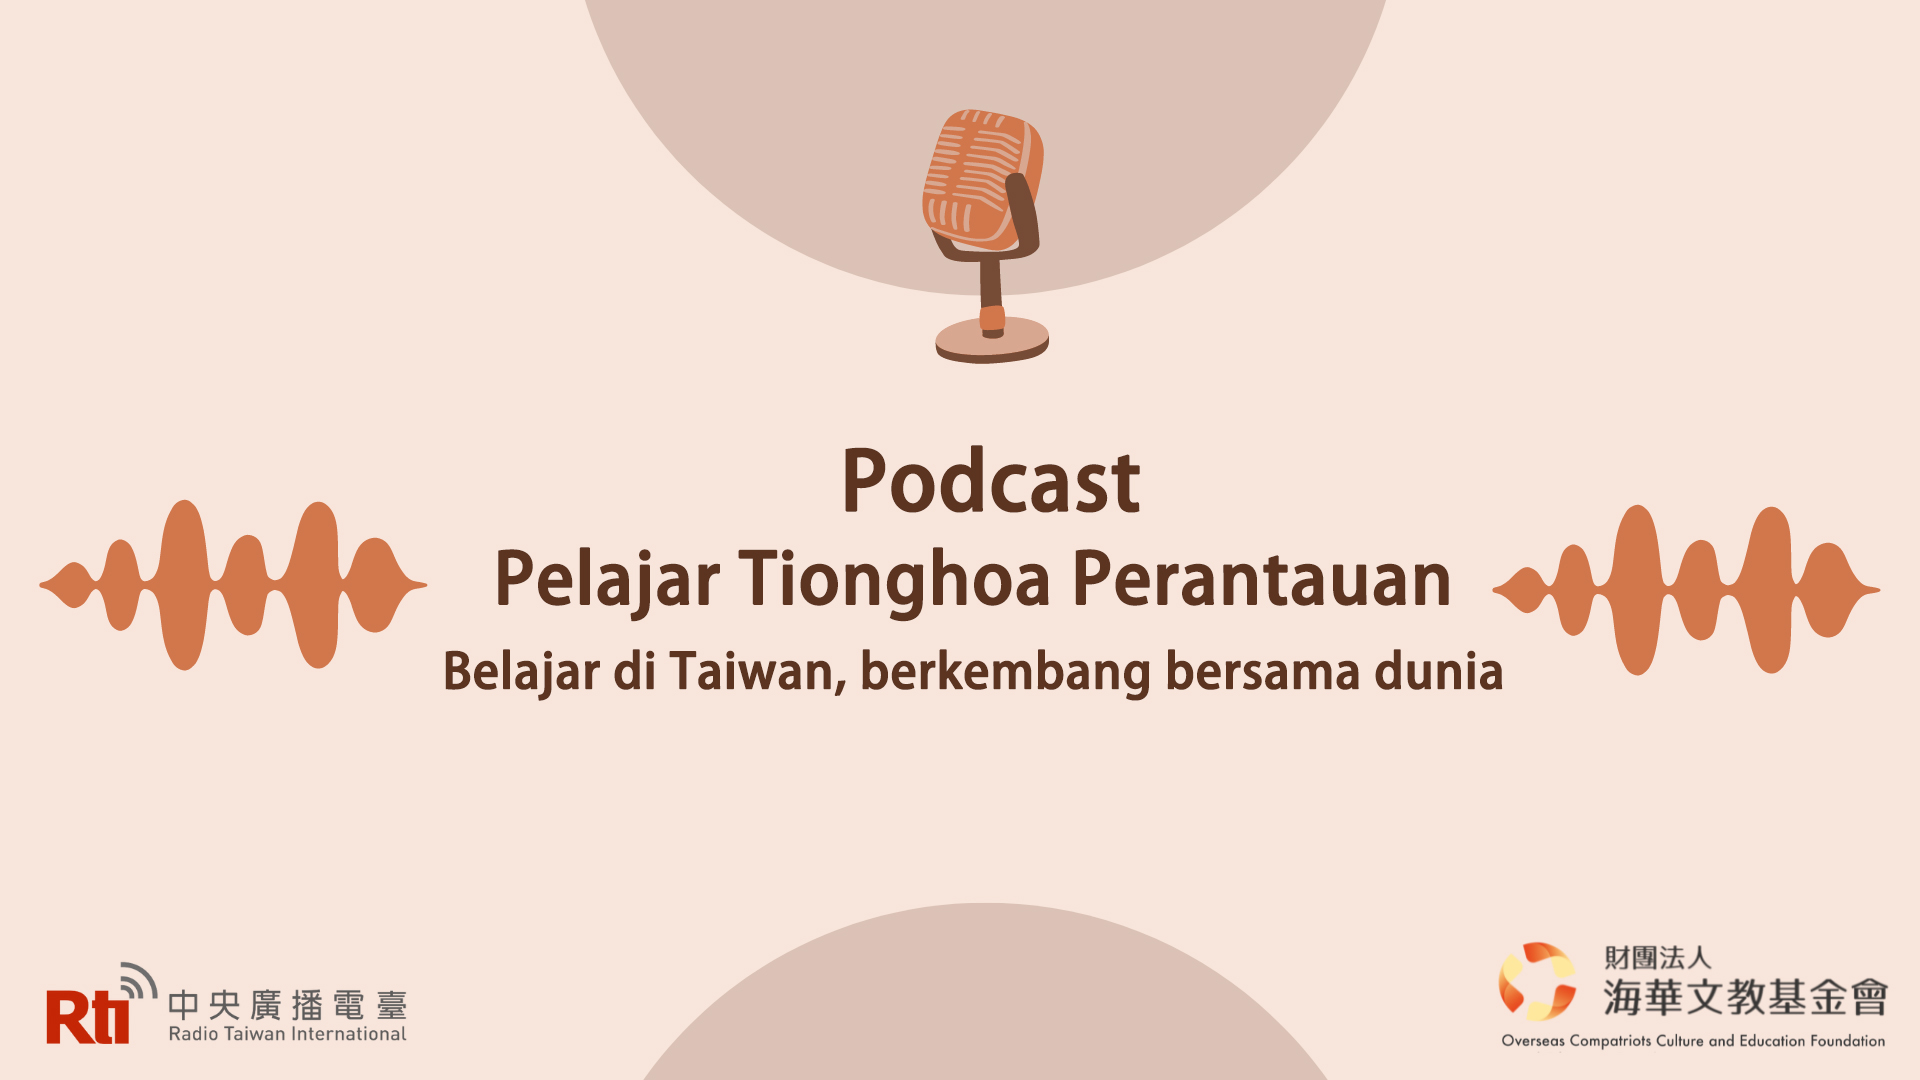 Podcast Pelajar Tionghoa Perantauan